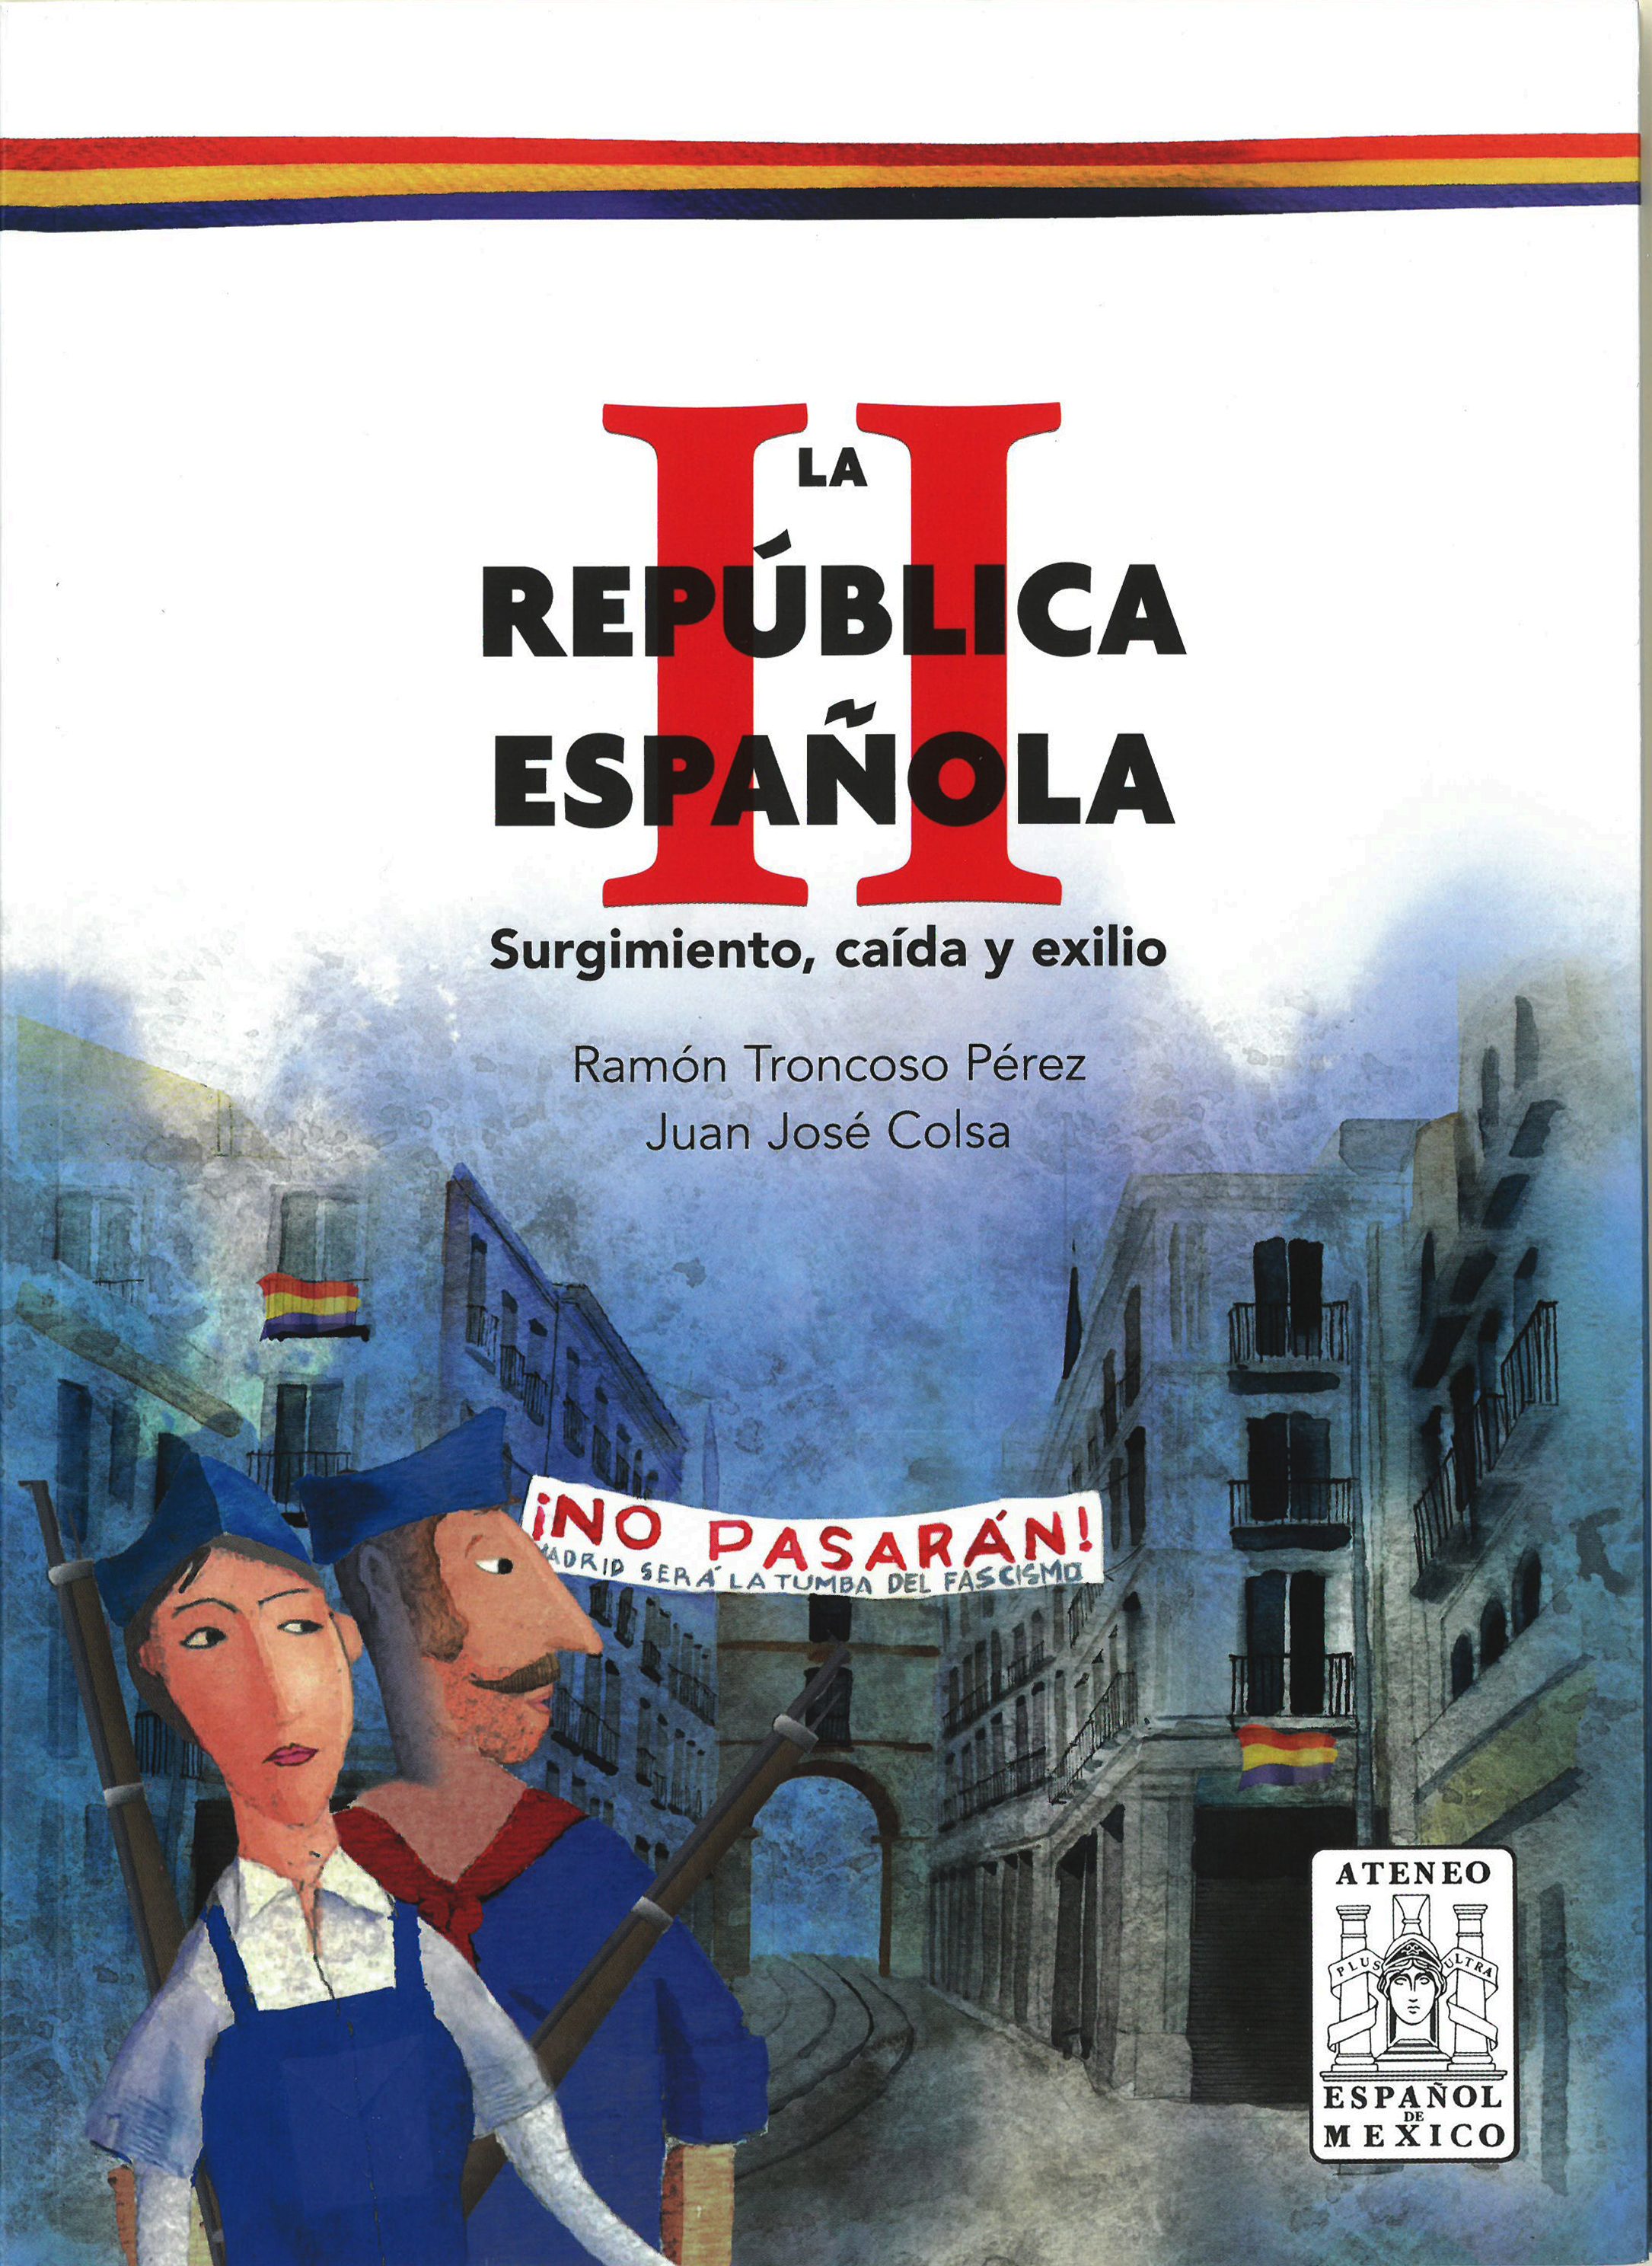 La II Republica Española, surgimiento caída y exilio.-image